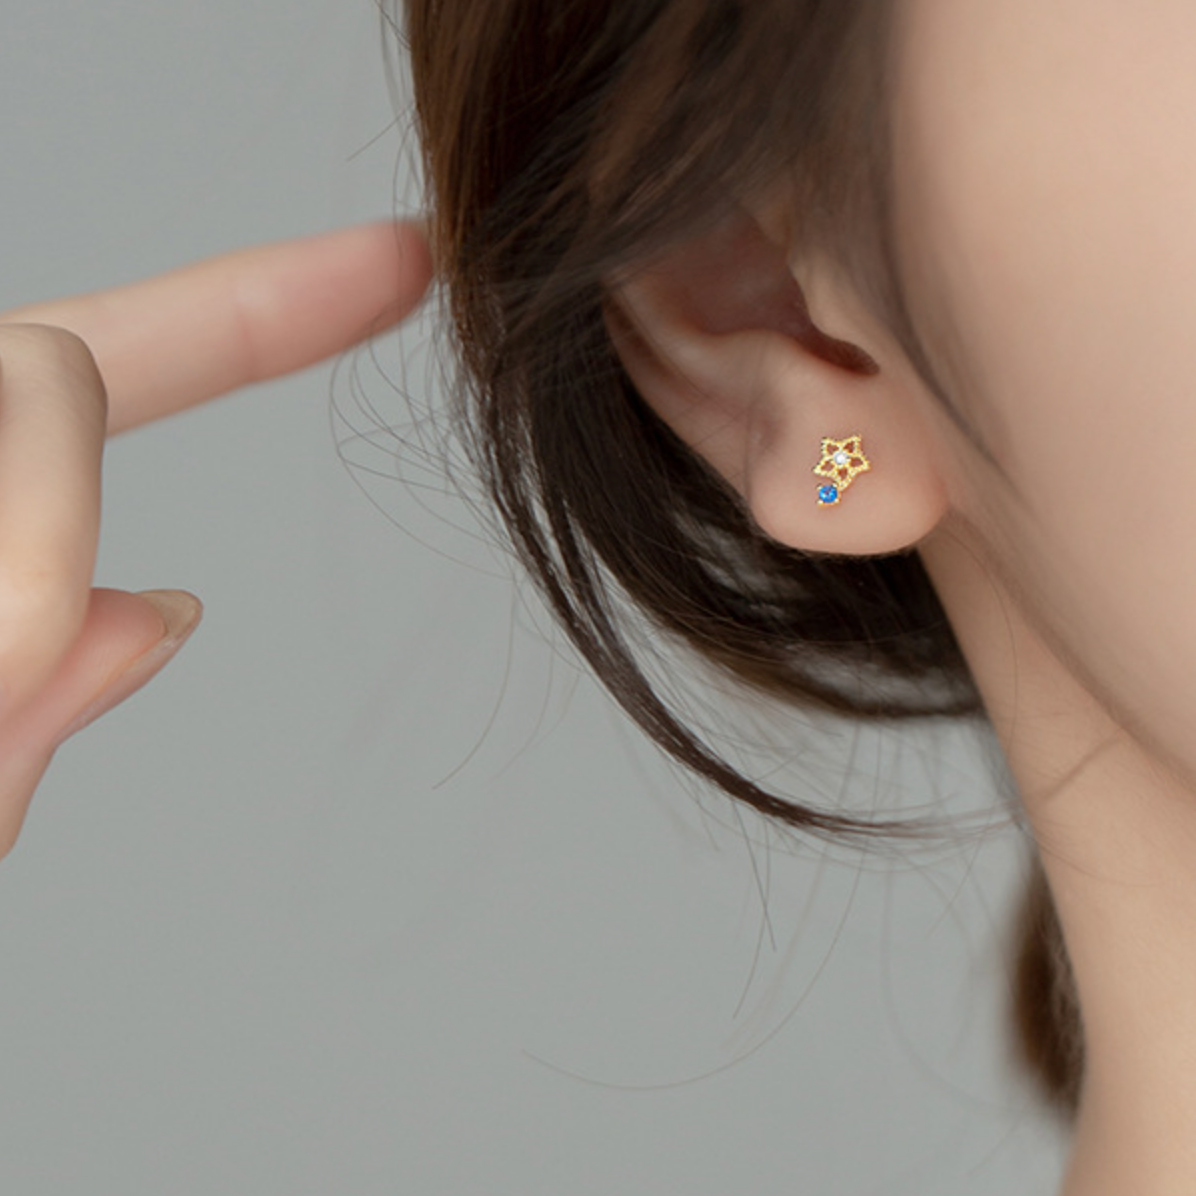 Crystal Star Stud Earrings